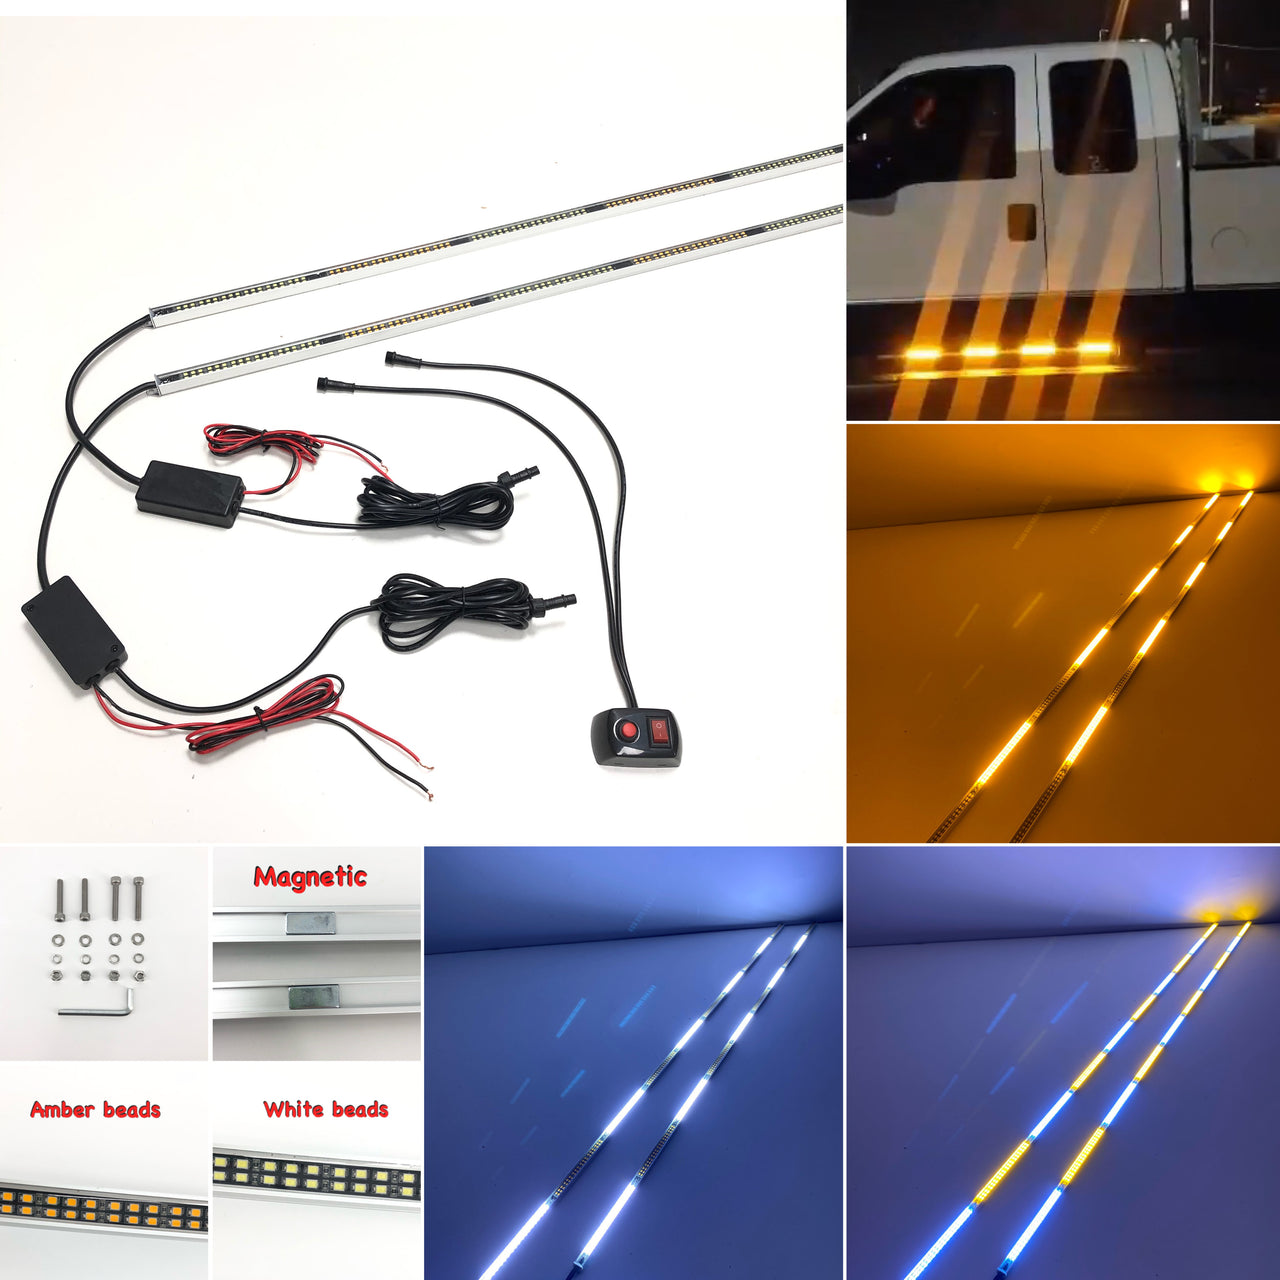 STRONG MAGNETIC LED Running Board Light Stick for Car, Trucks, Emergency Vehicles (2 packs)